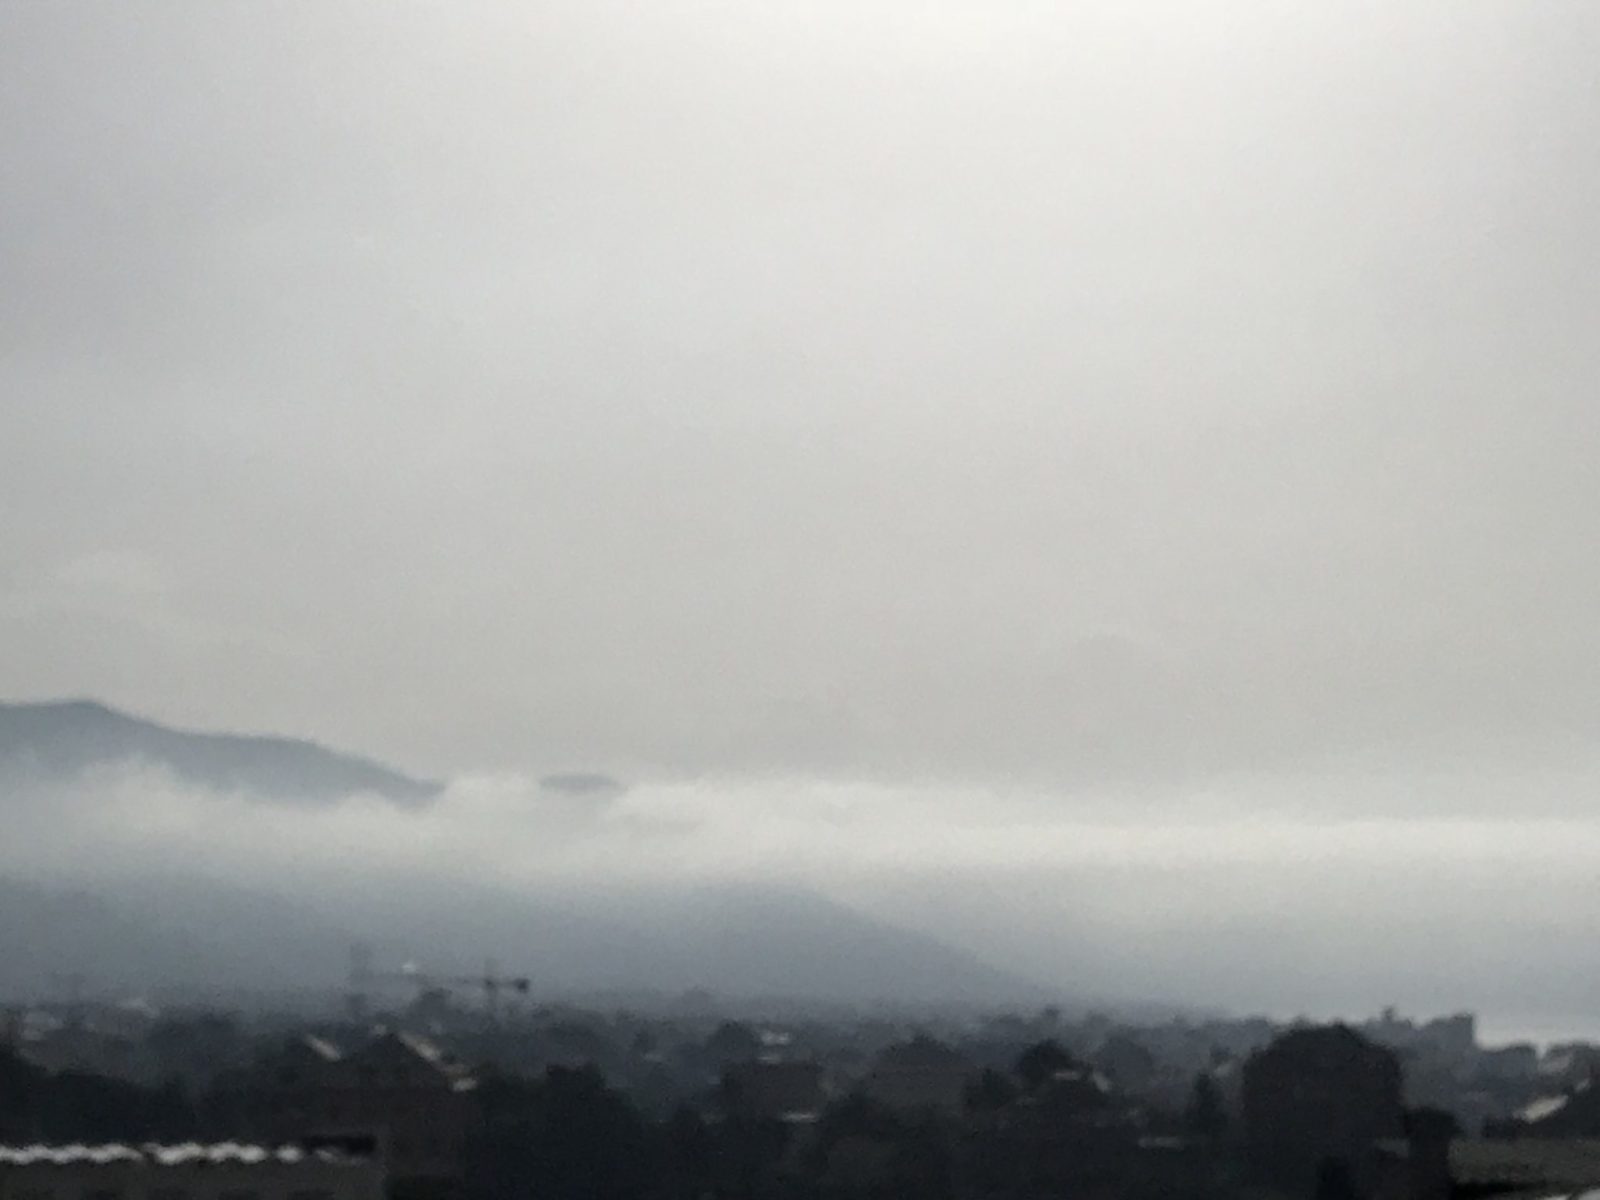 Caliga o semplice nebbia su Genova Quinto?